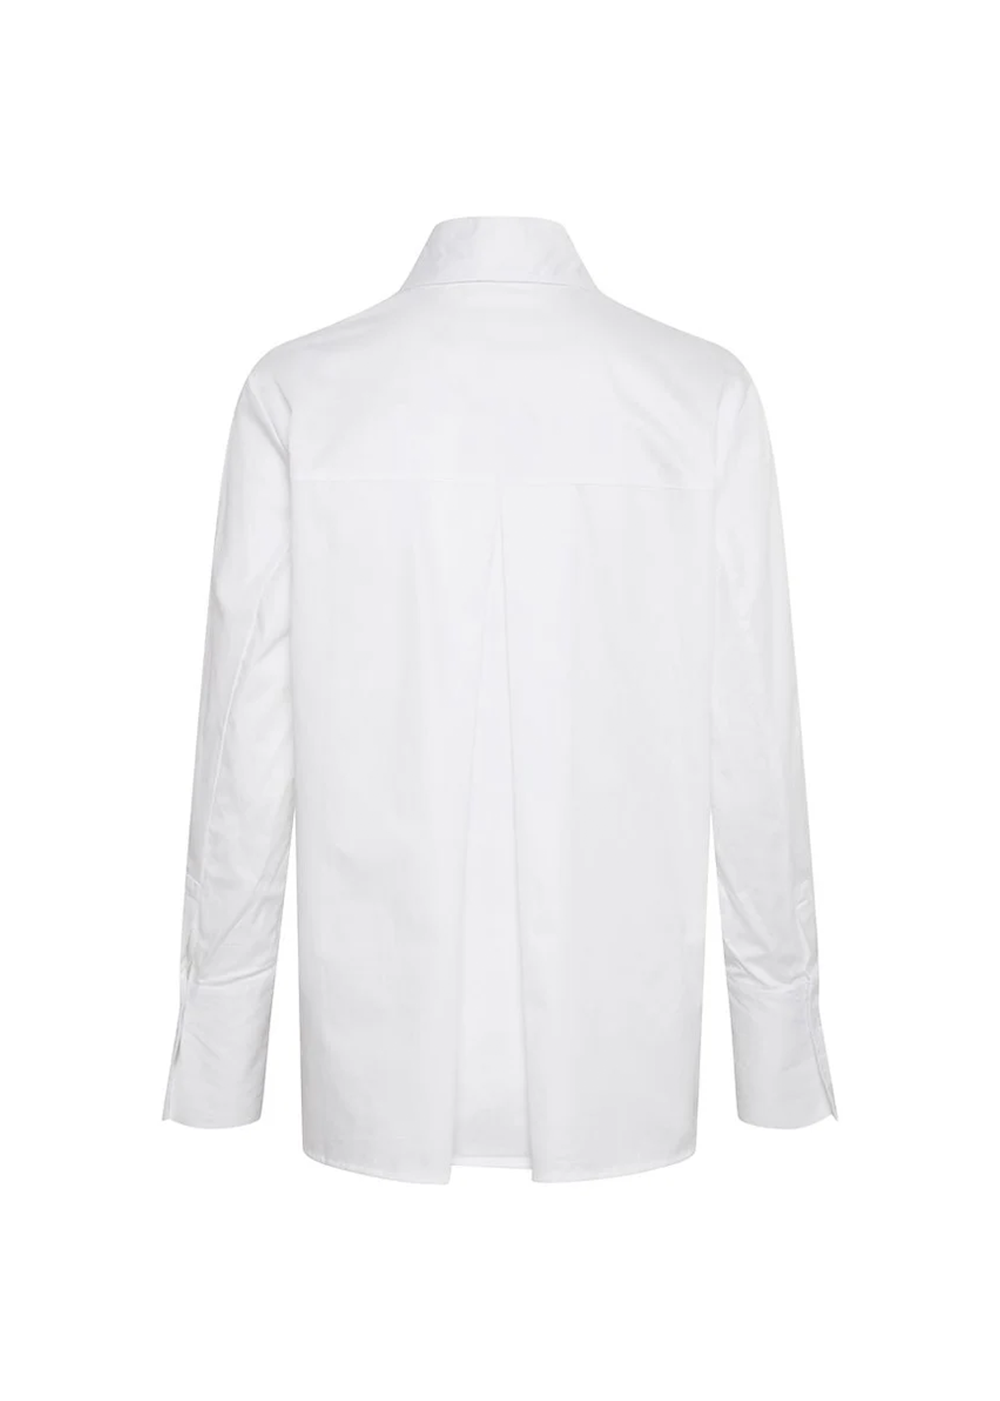 Vex Shirt - White - InWear - Danali - Canada